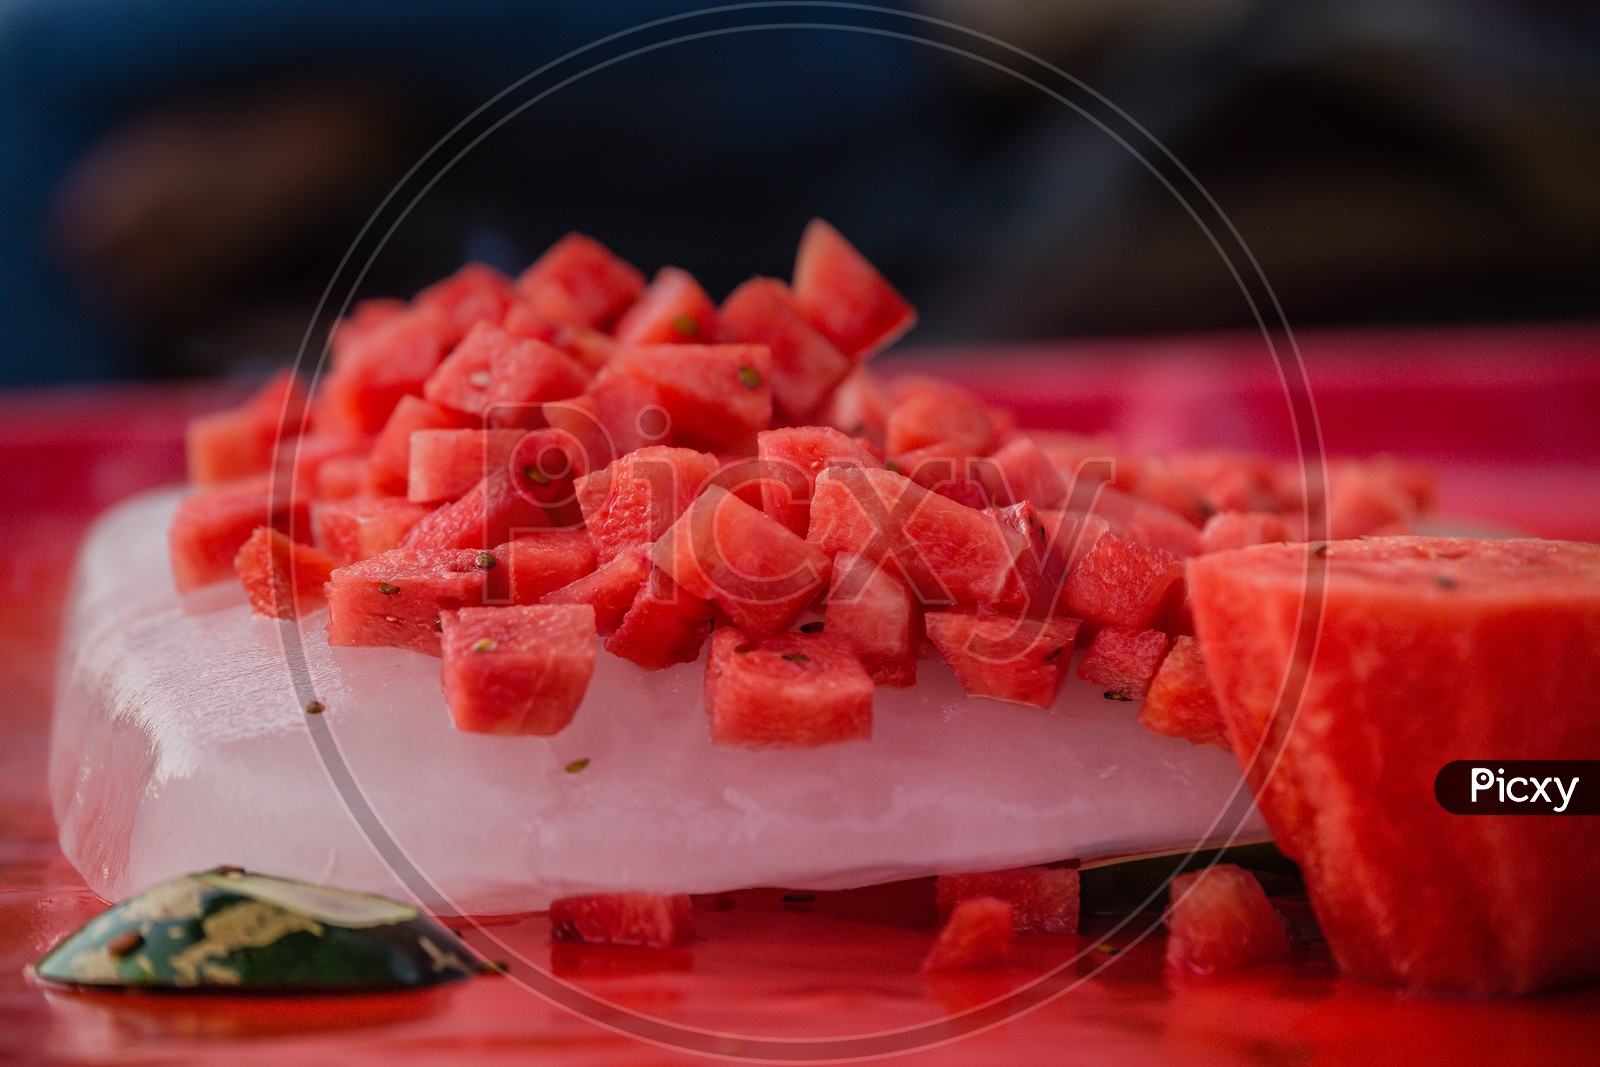 Watermelon cut into slices